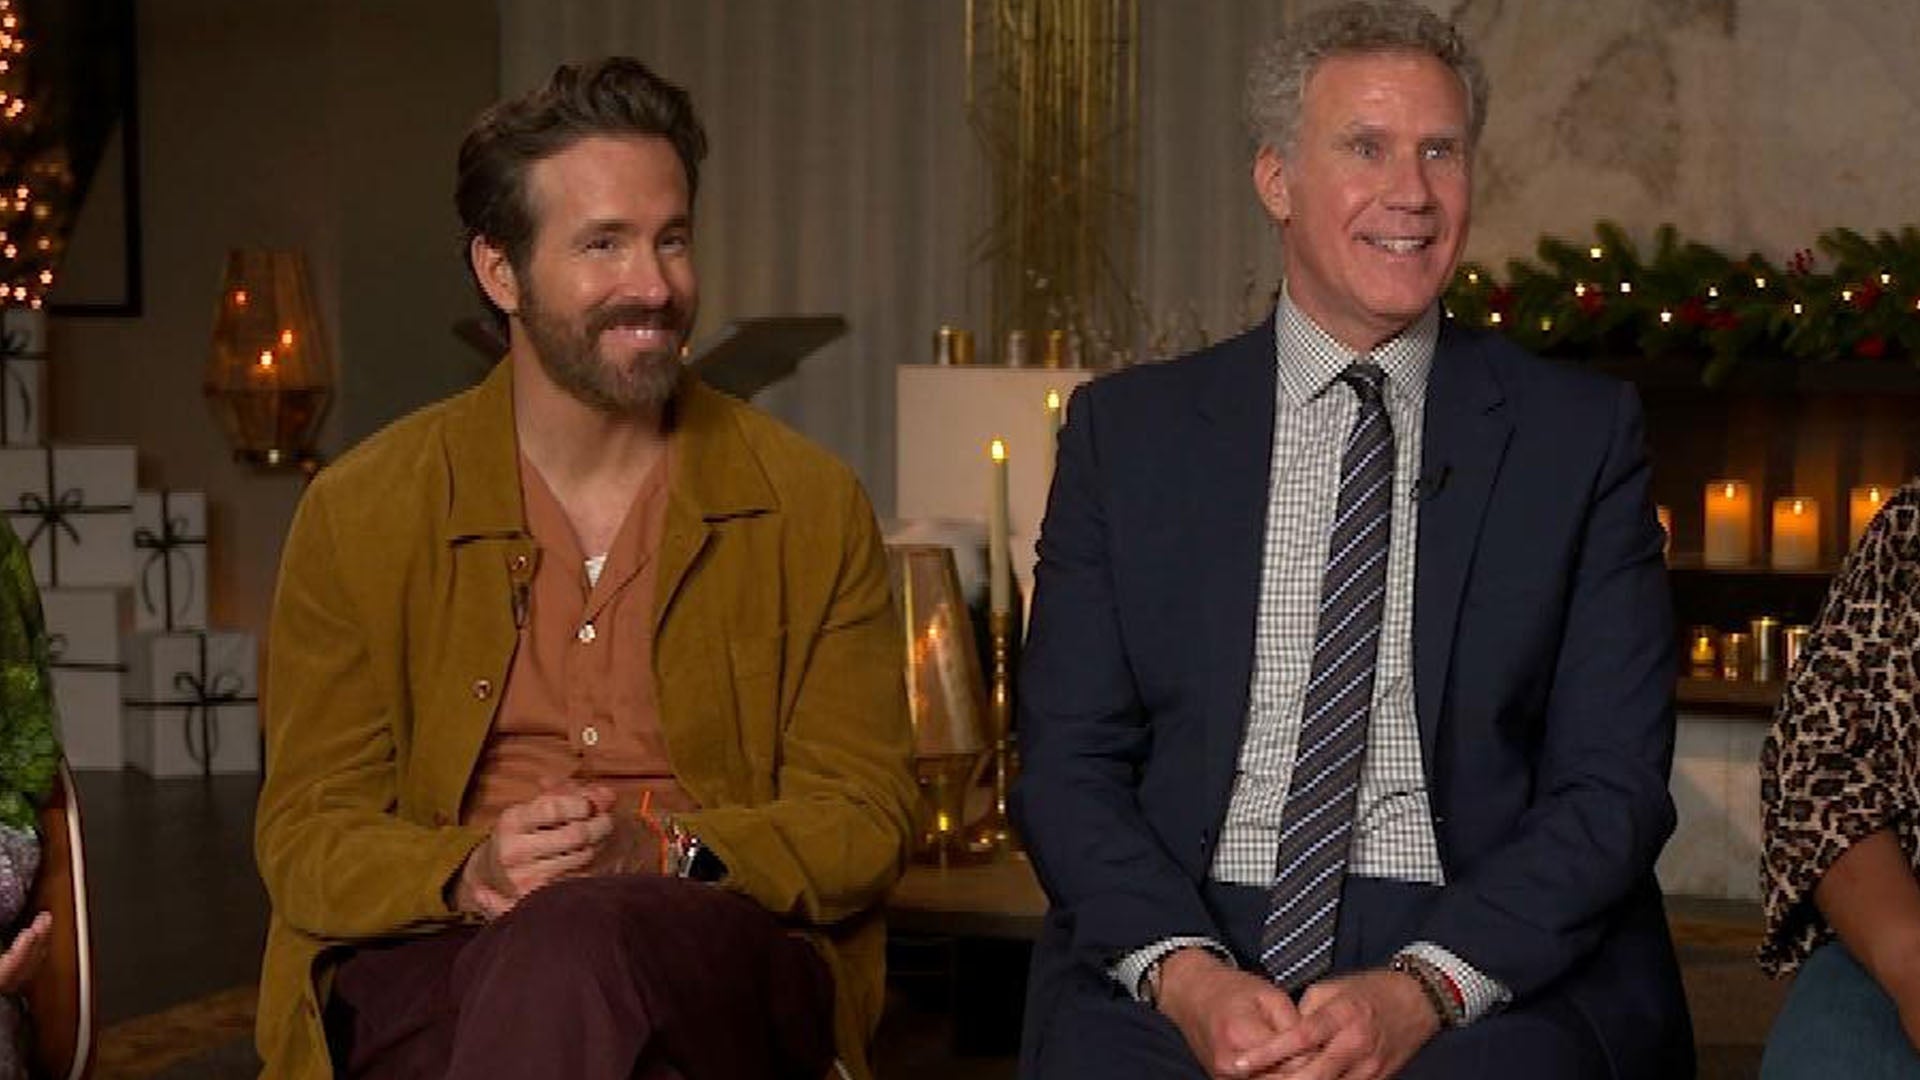 Spirited' Teaser: Ryan Reynolds, Will Ferrell Team Up for